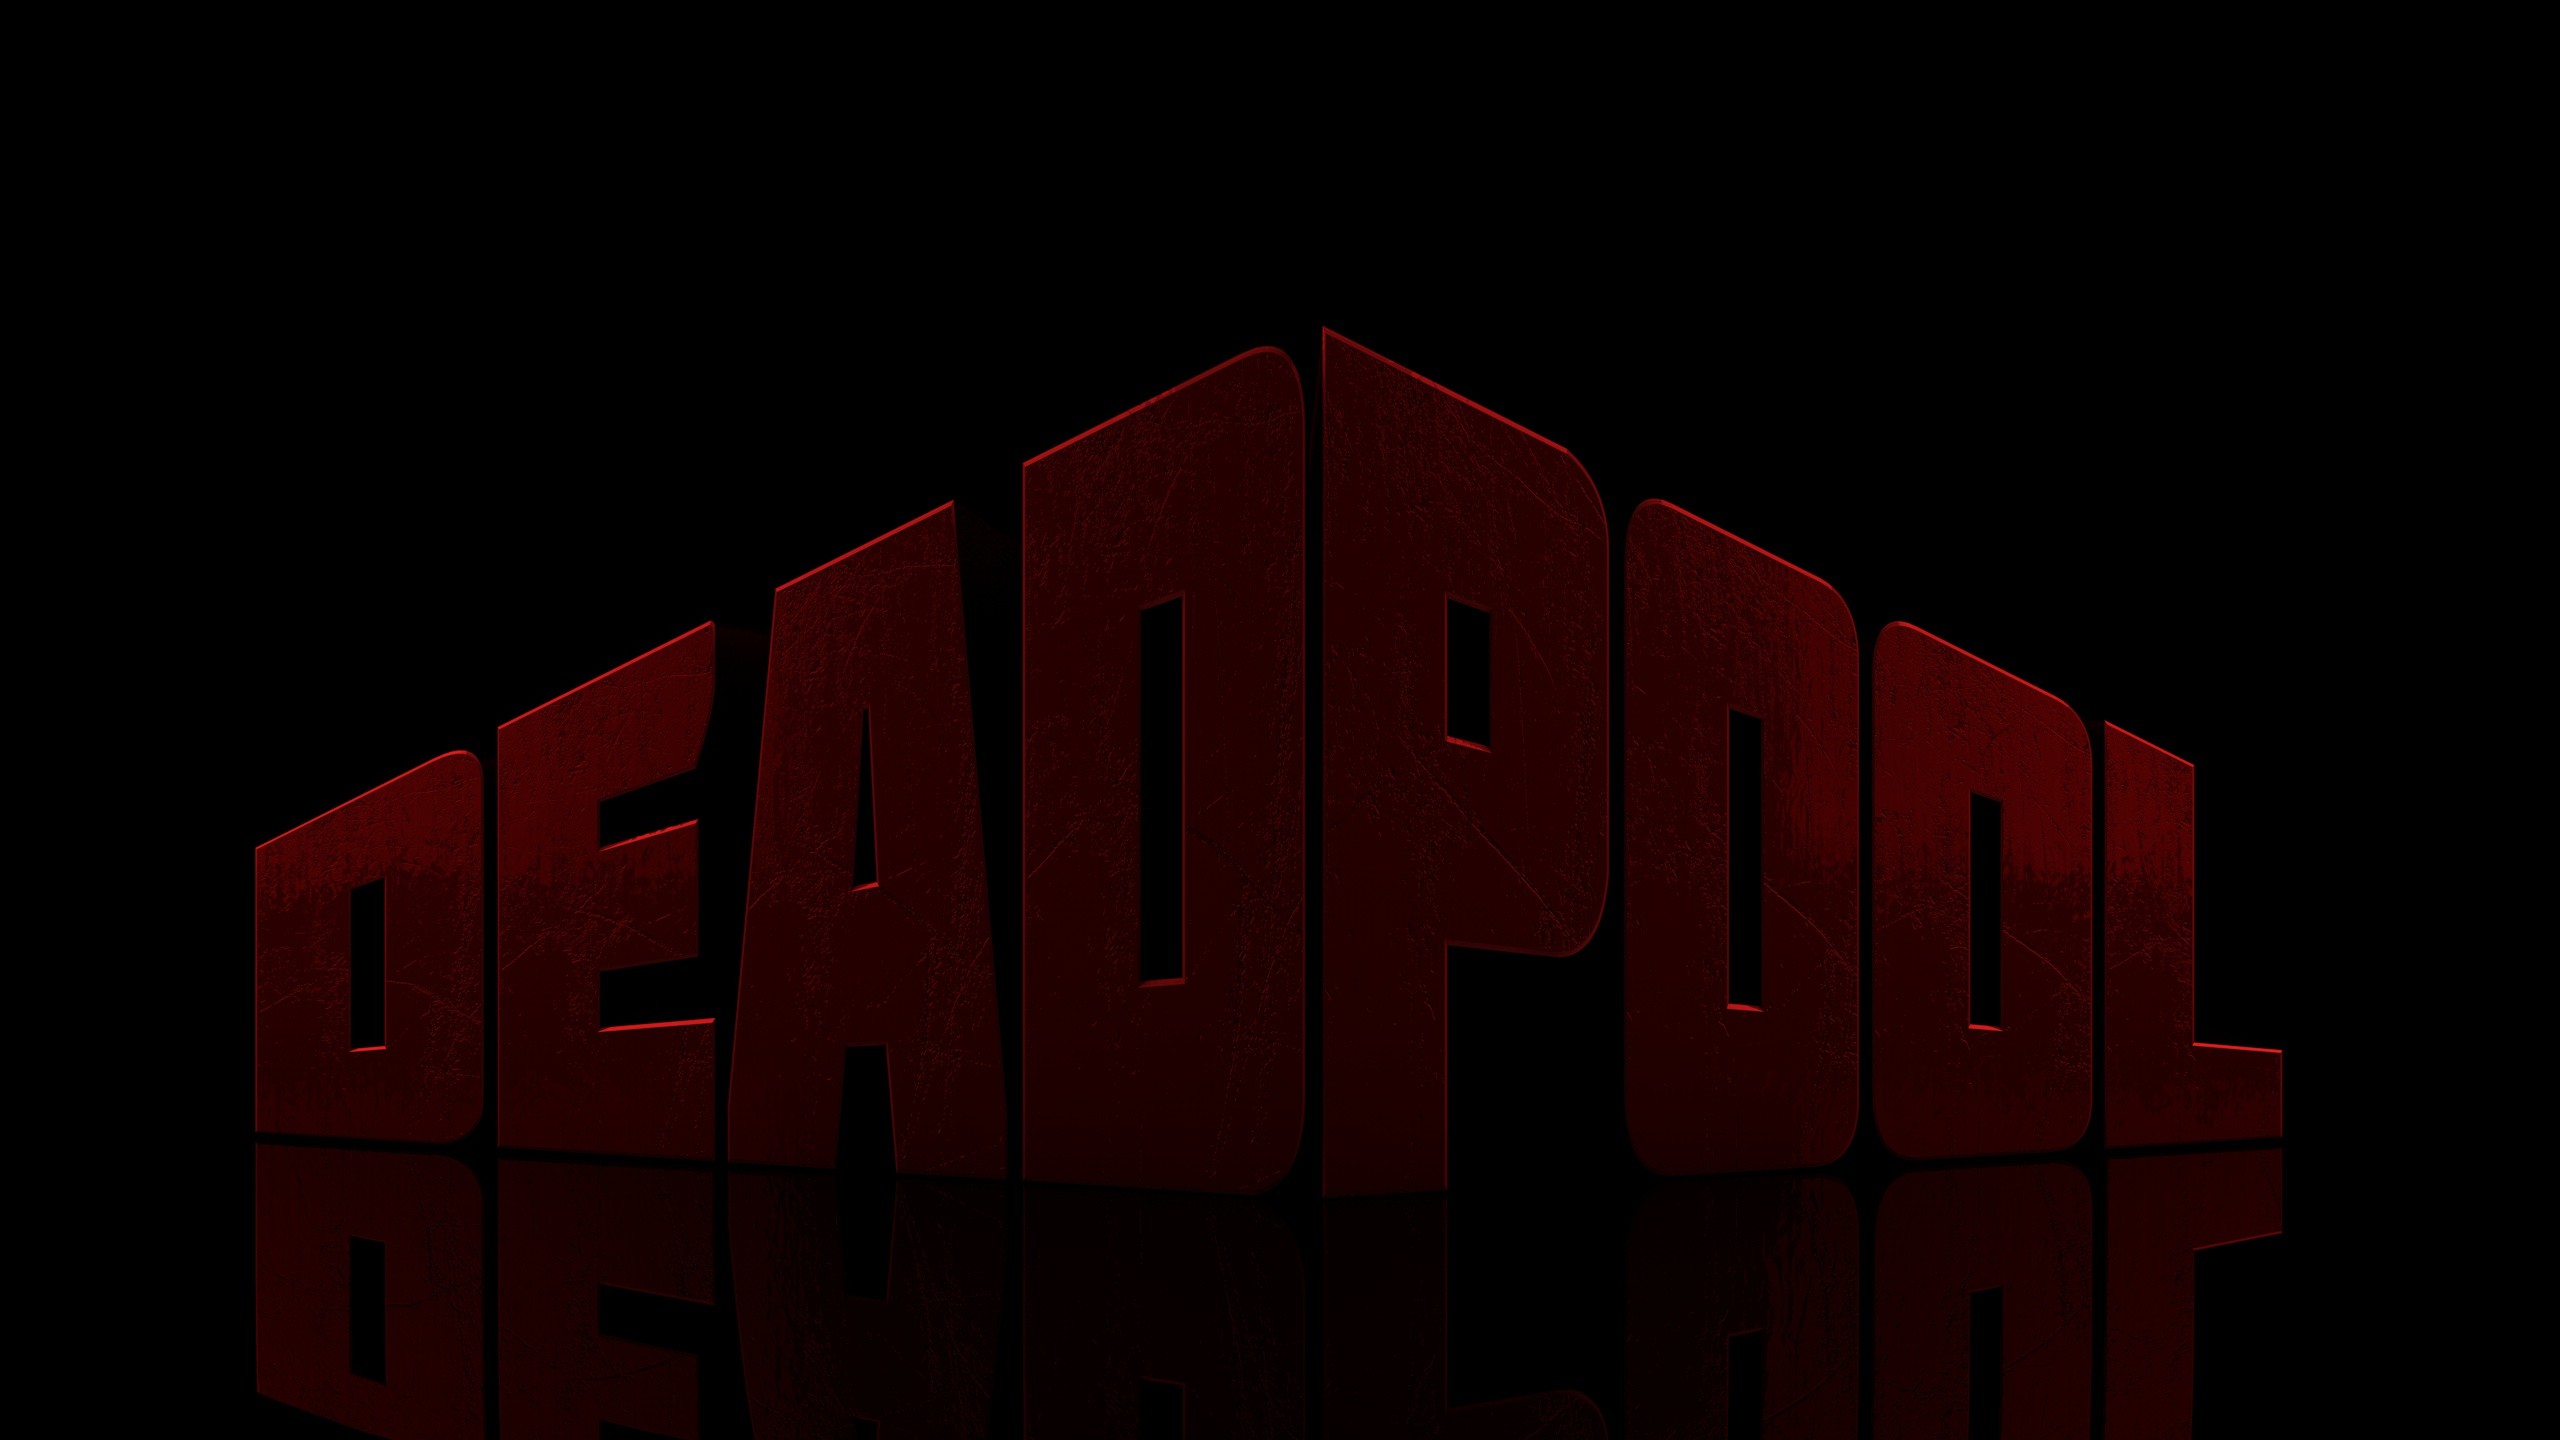 2560x1440 Homemade Deadpool Wallpaper ...